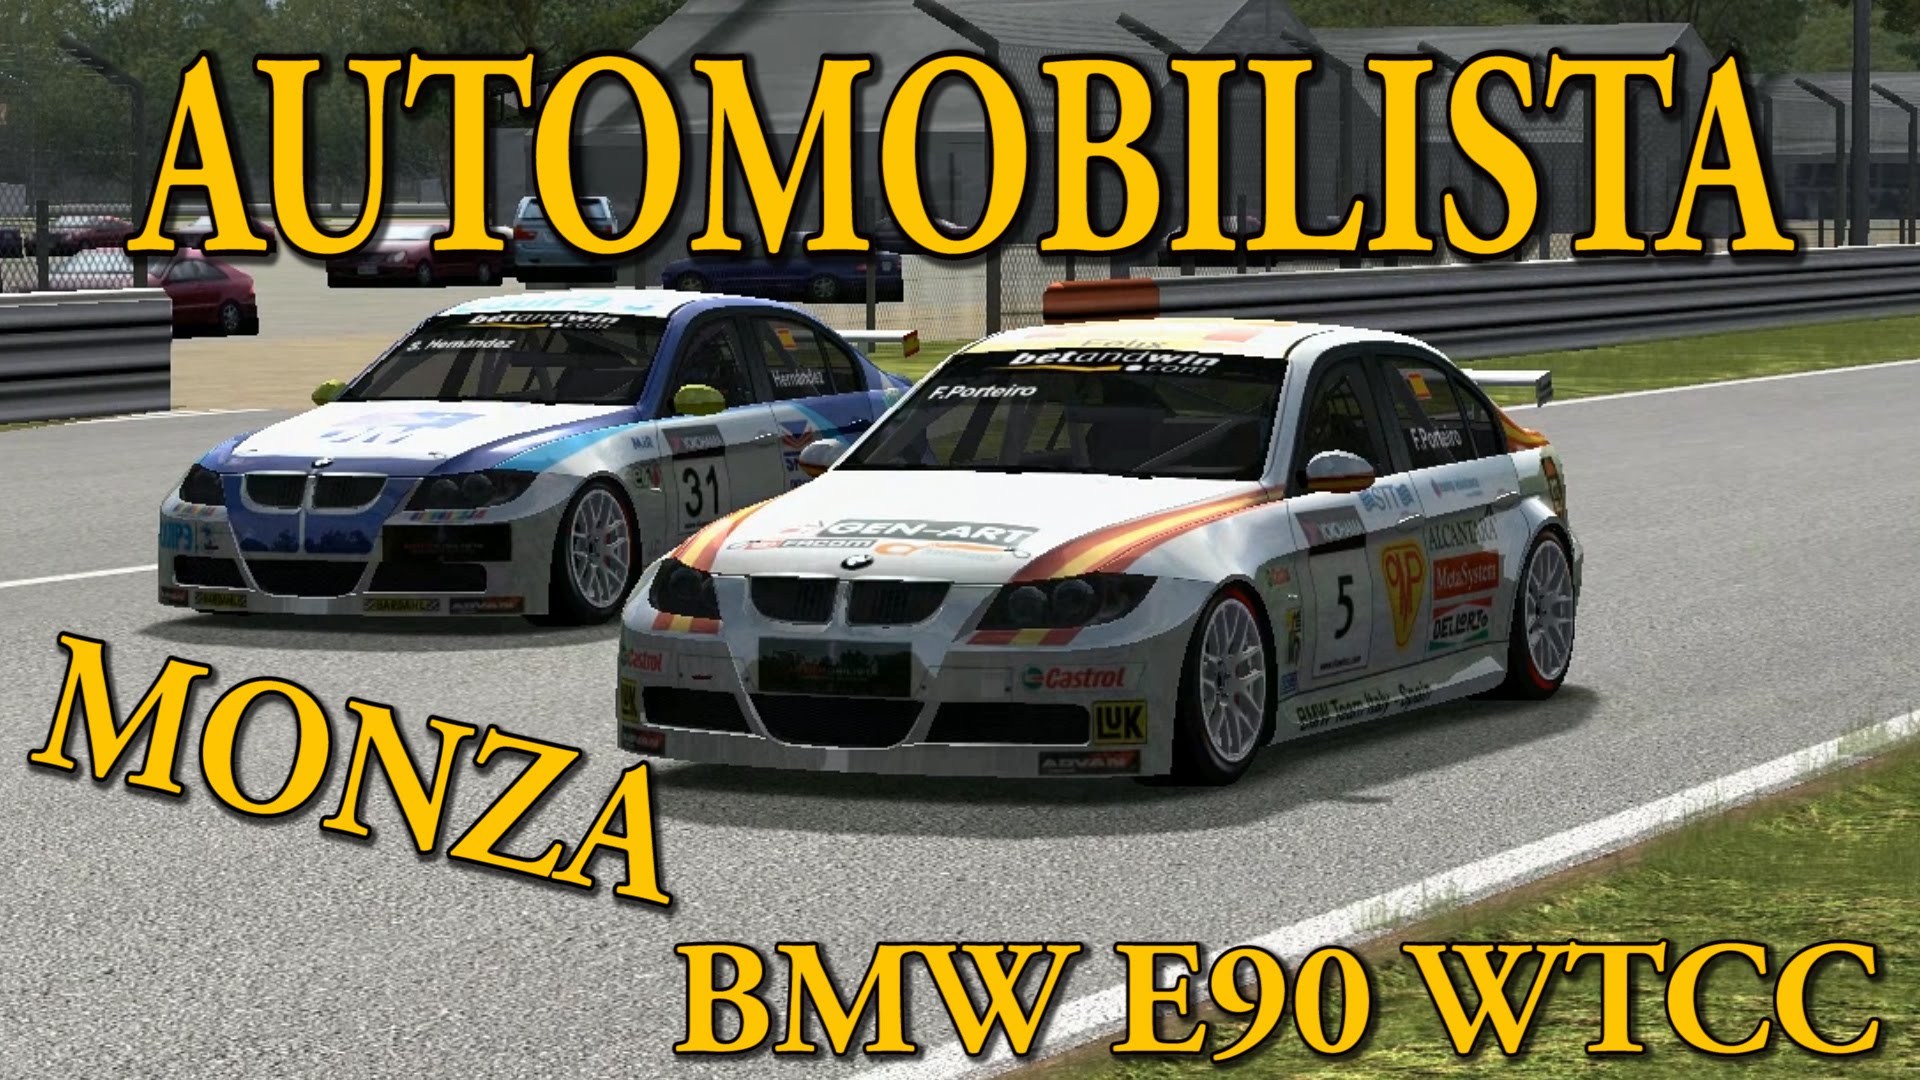 Circuit de Moza amb els BMW E90' WCTT || Automobilista de Enric Pizà